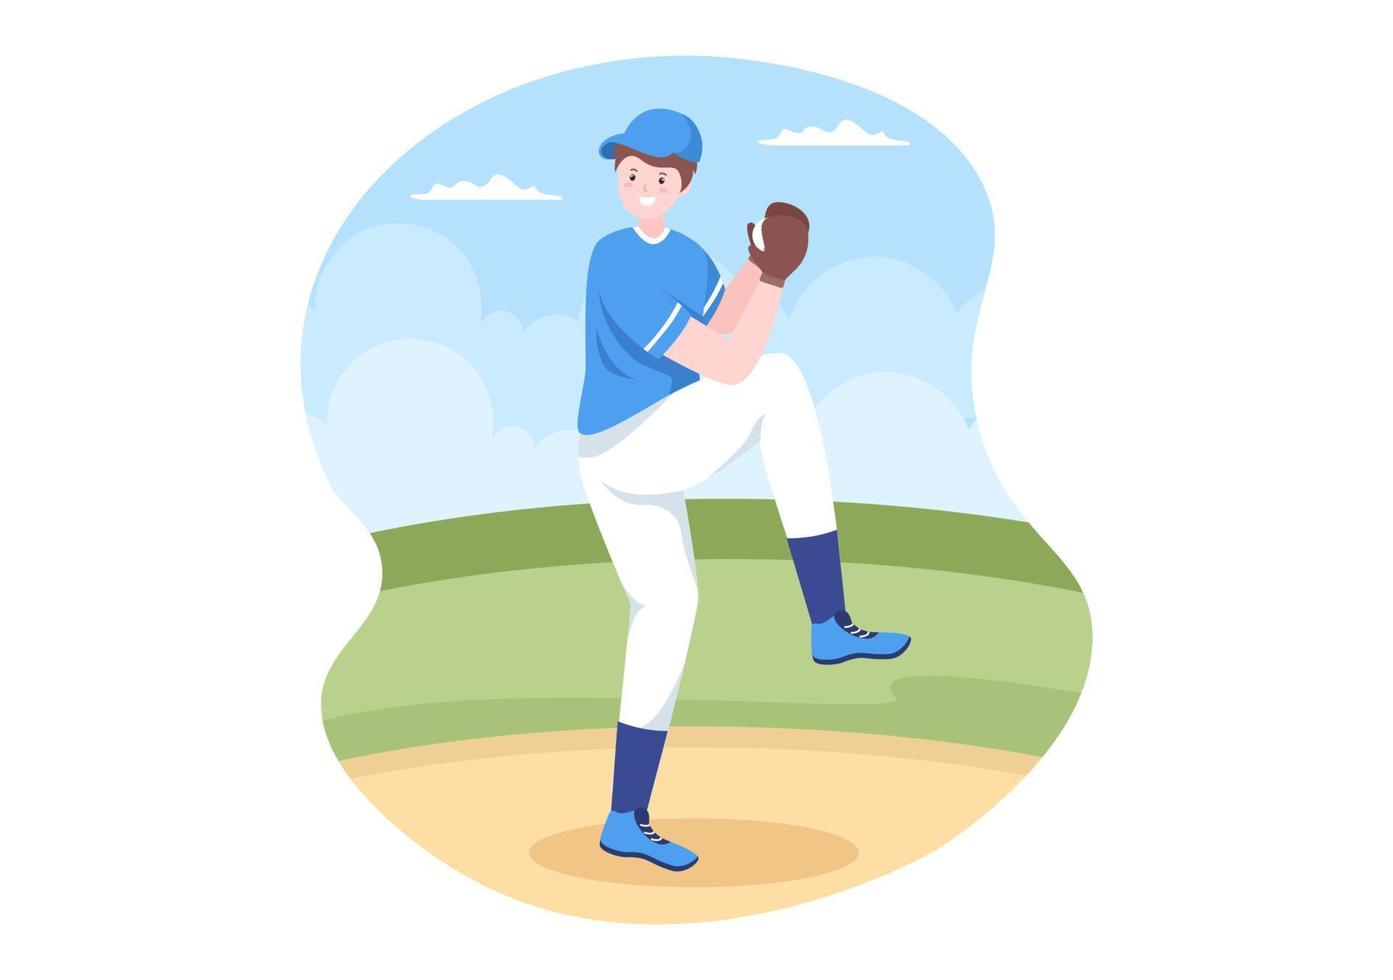 baseballspelare sporter som kastar, fångar eller slår en boll med fladdermöss och handskar i uniform på domstolsstadion i platt tecknad illustration vektor